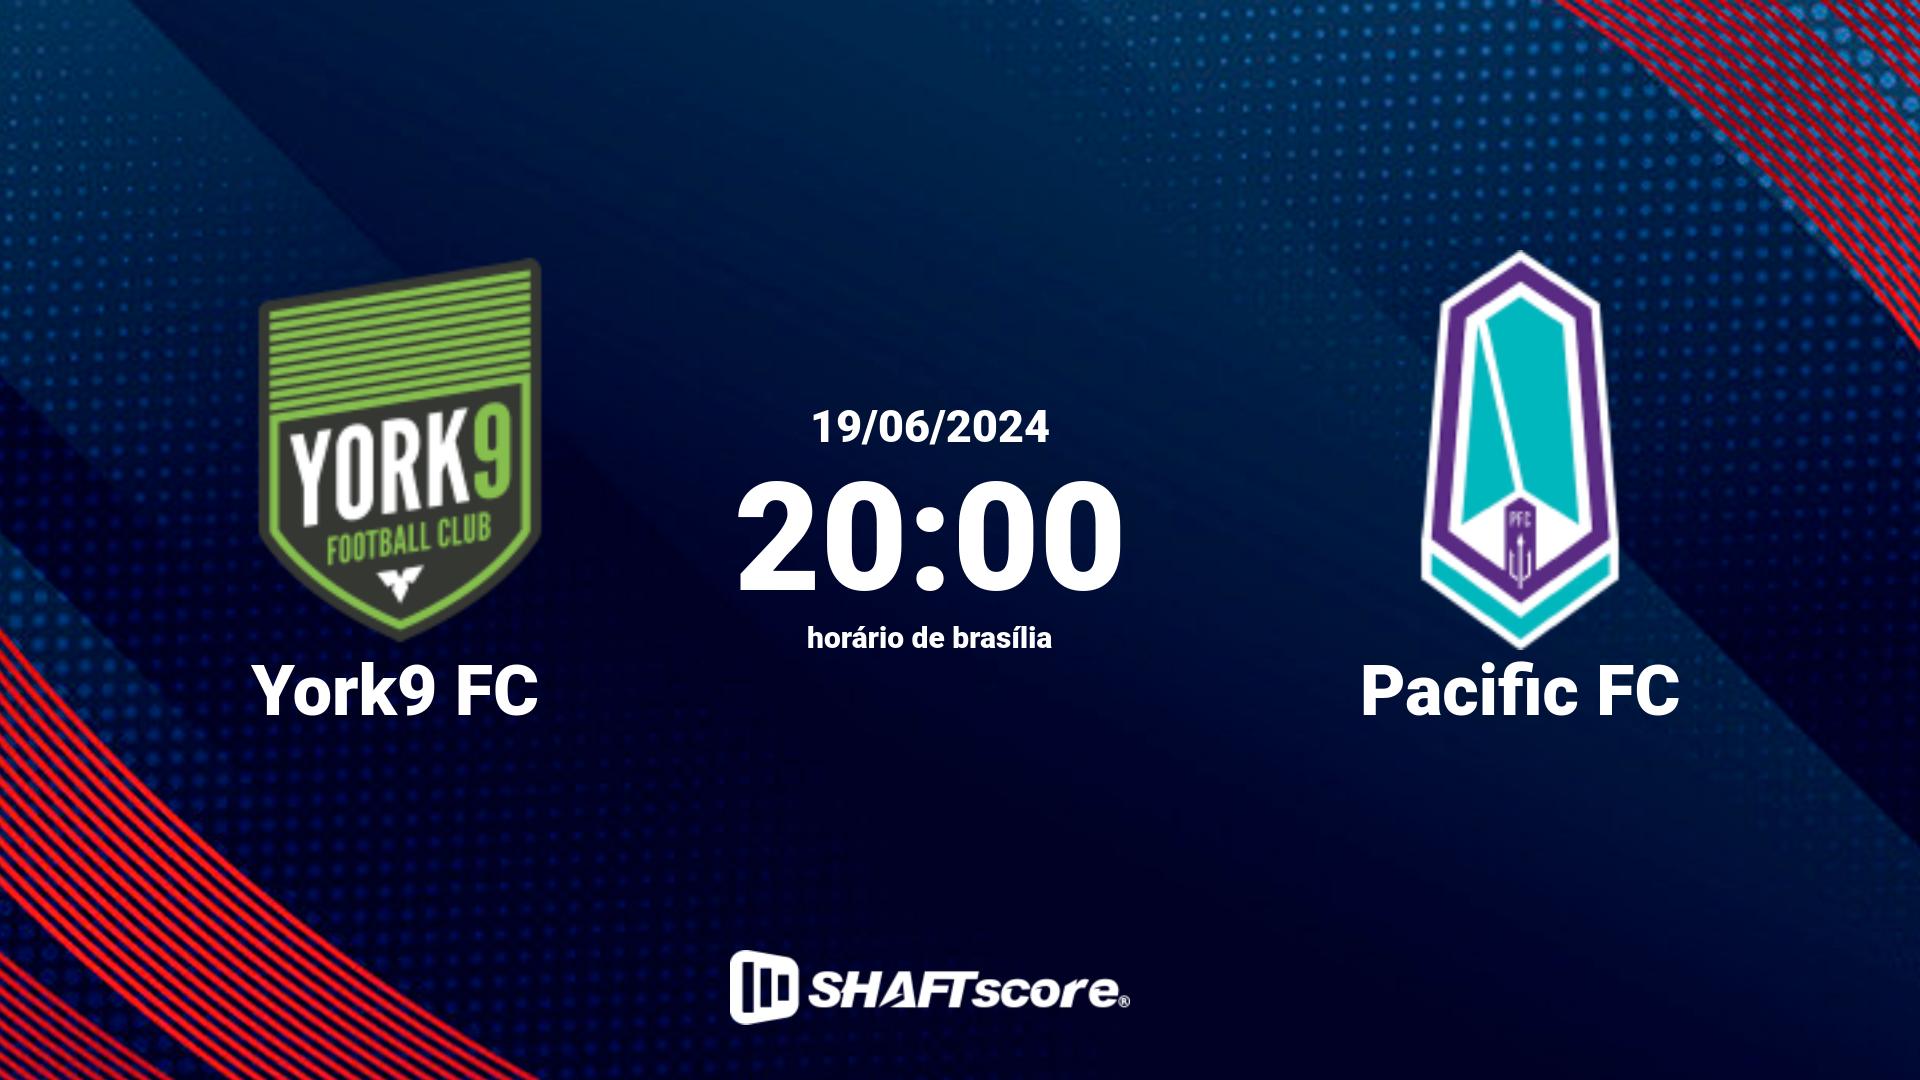 Estatísticas do jogo York9 FC vs Pacific FC 19.06 20:00